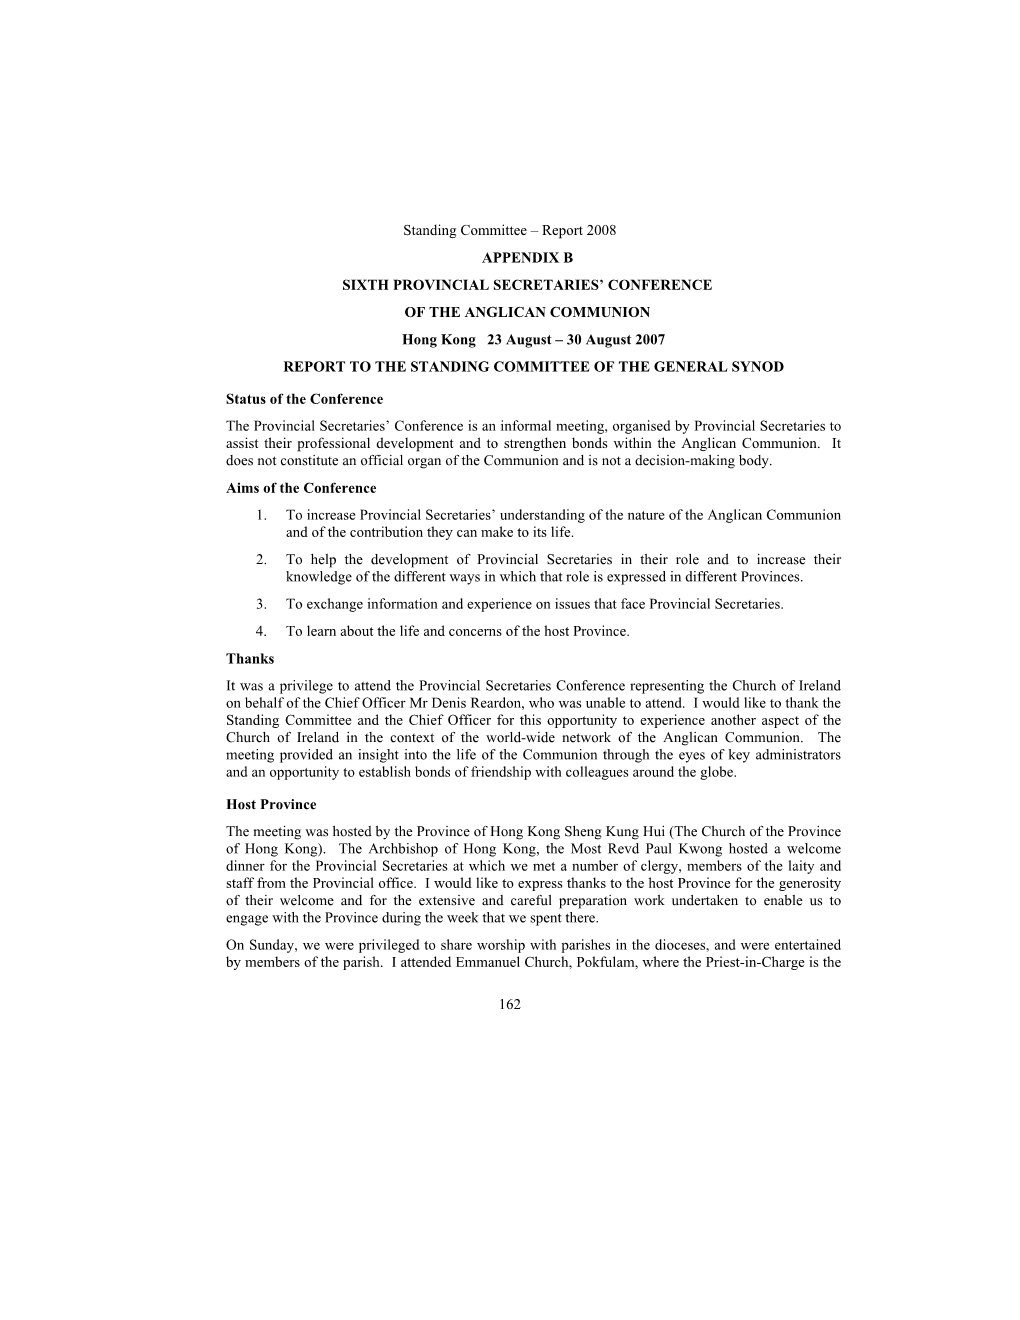 Standing Committee – Report 2008 162 APPENDIX B SIXTH